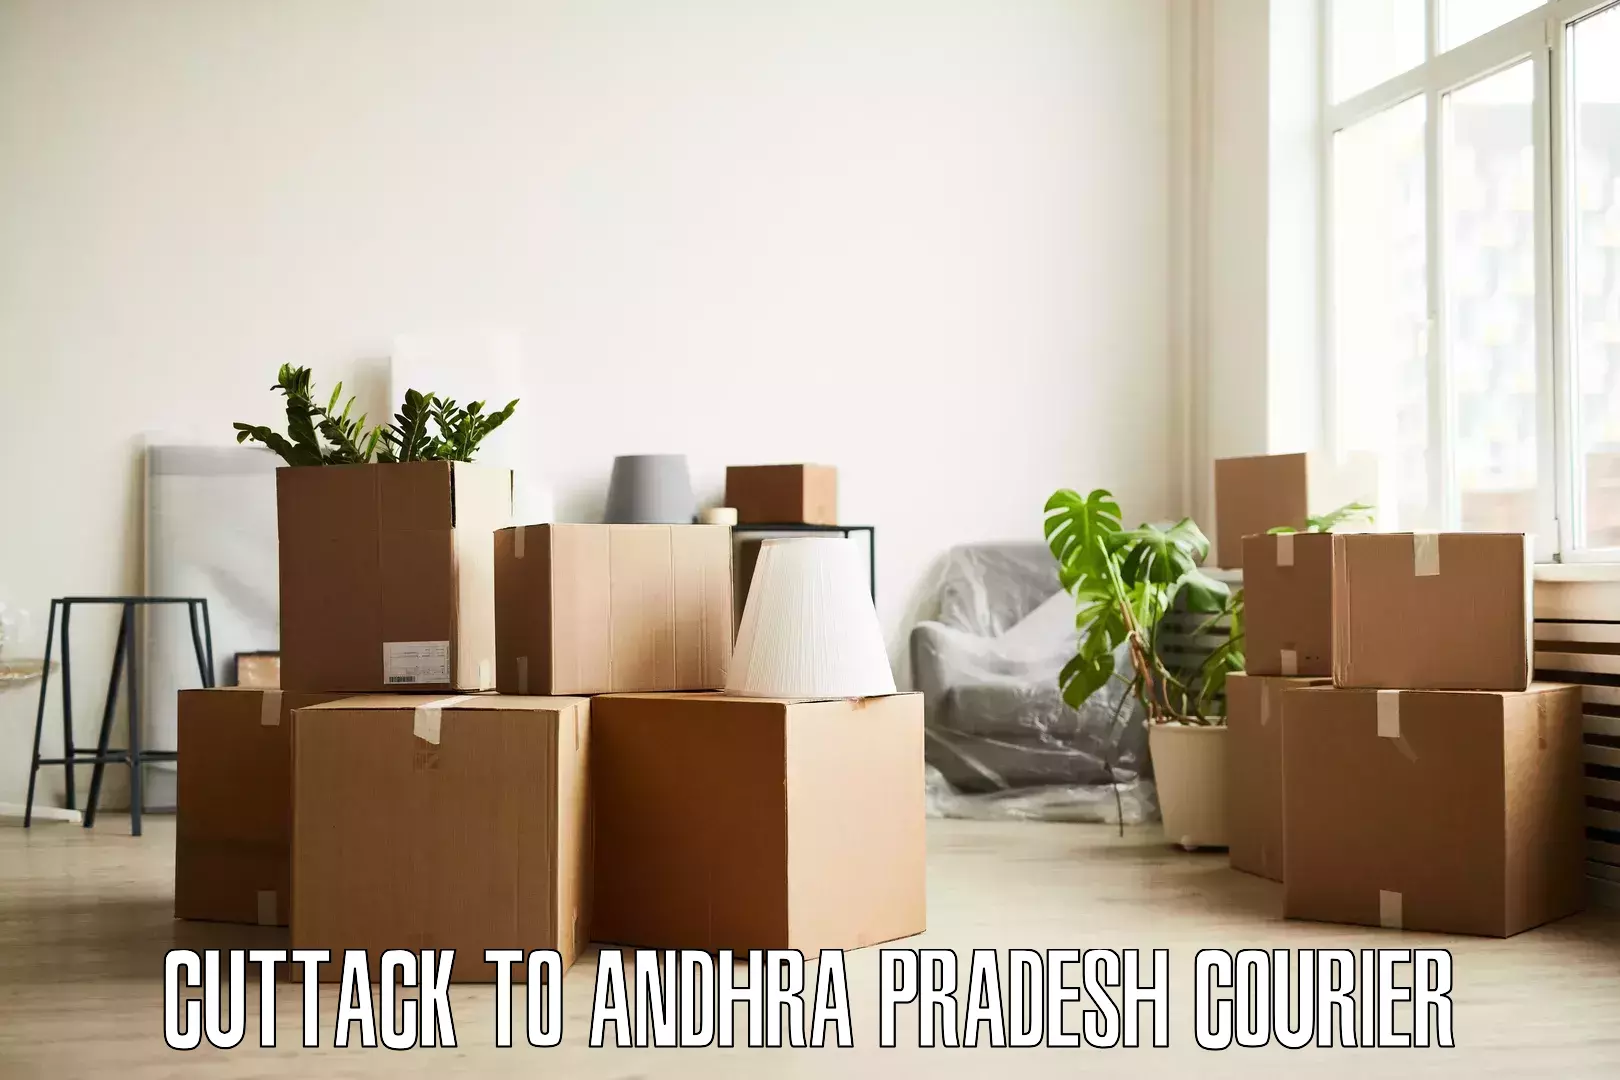 Trusted moving company Cuttack to Tada Tirupati